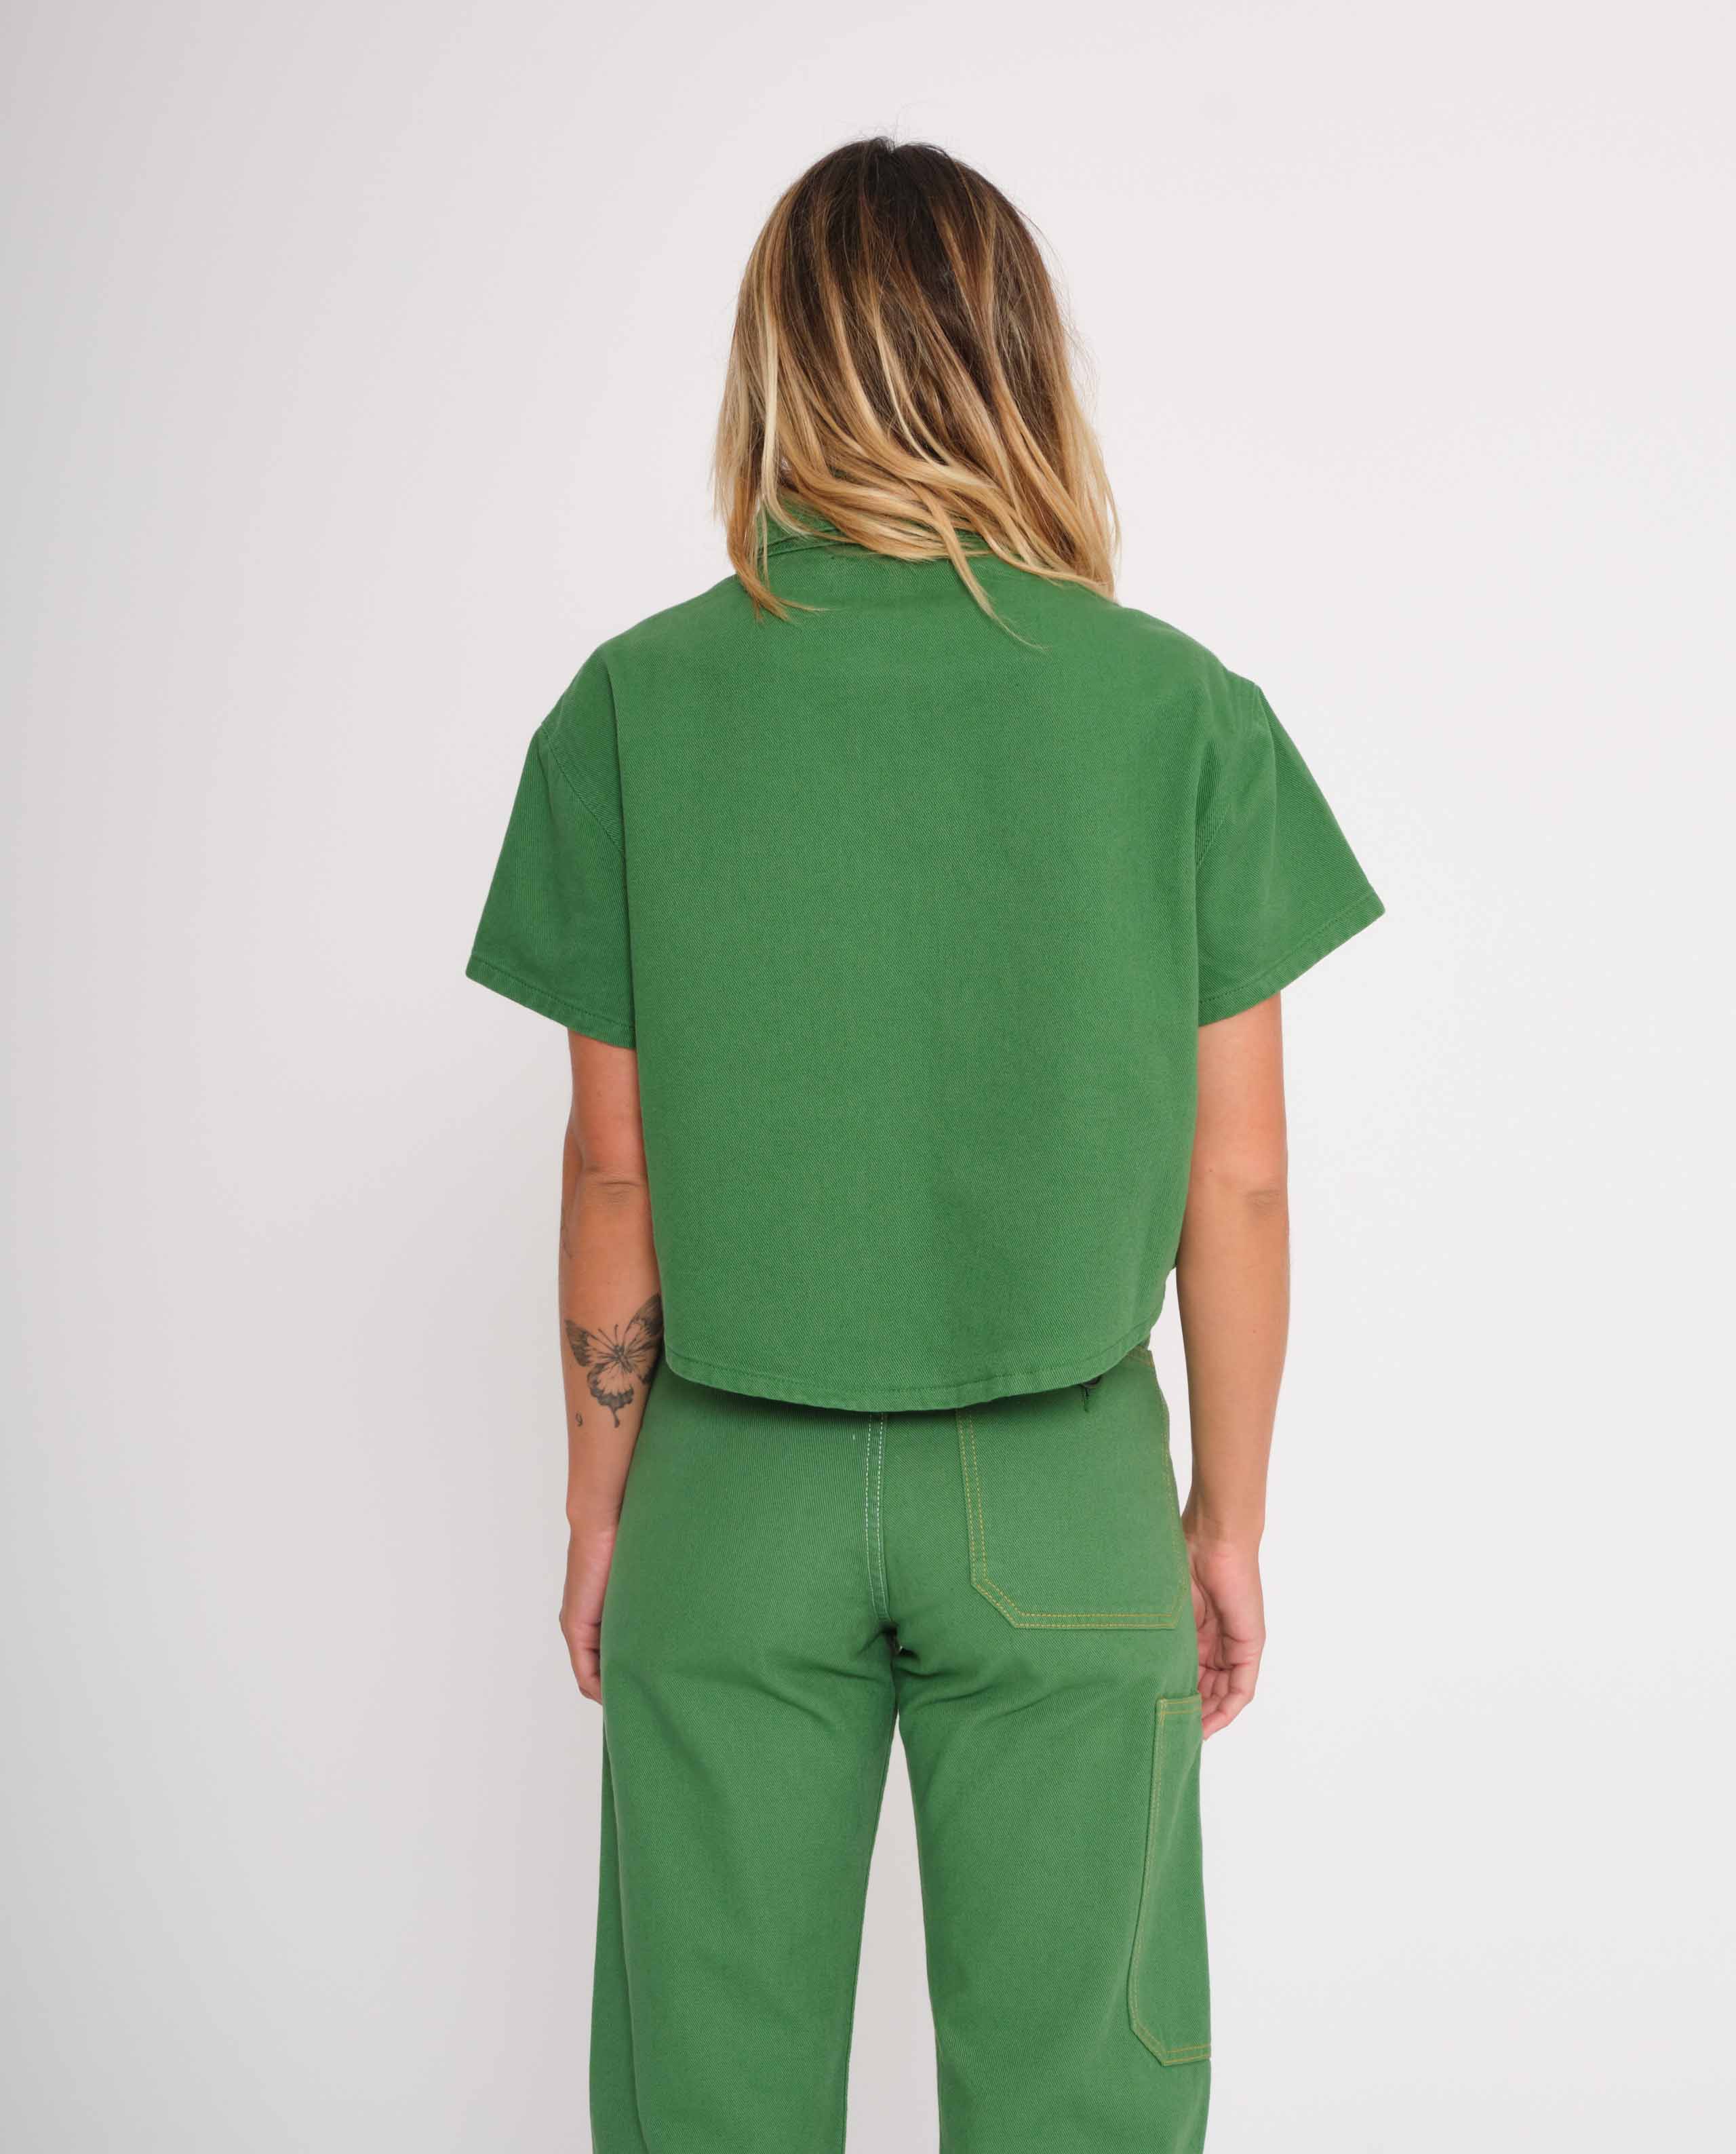 marché commun graine femme chemisette courte workwear travail coton biologique brodée vert gazon